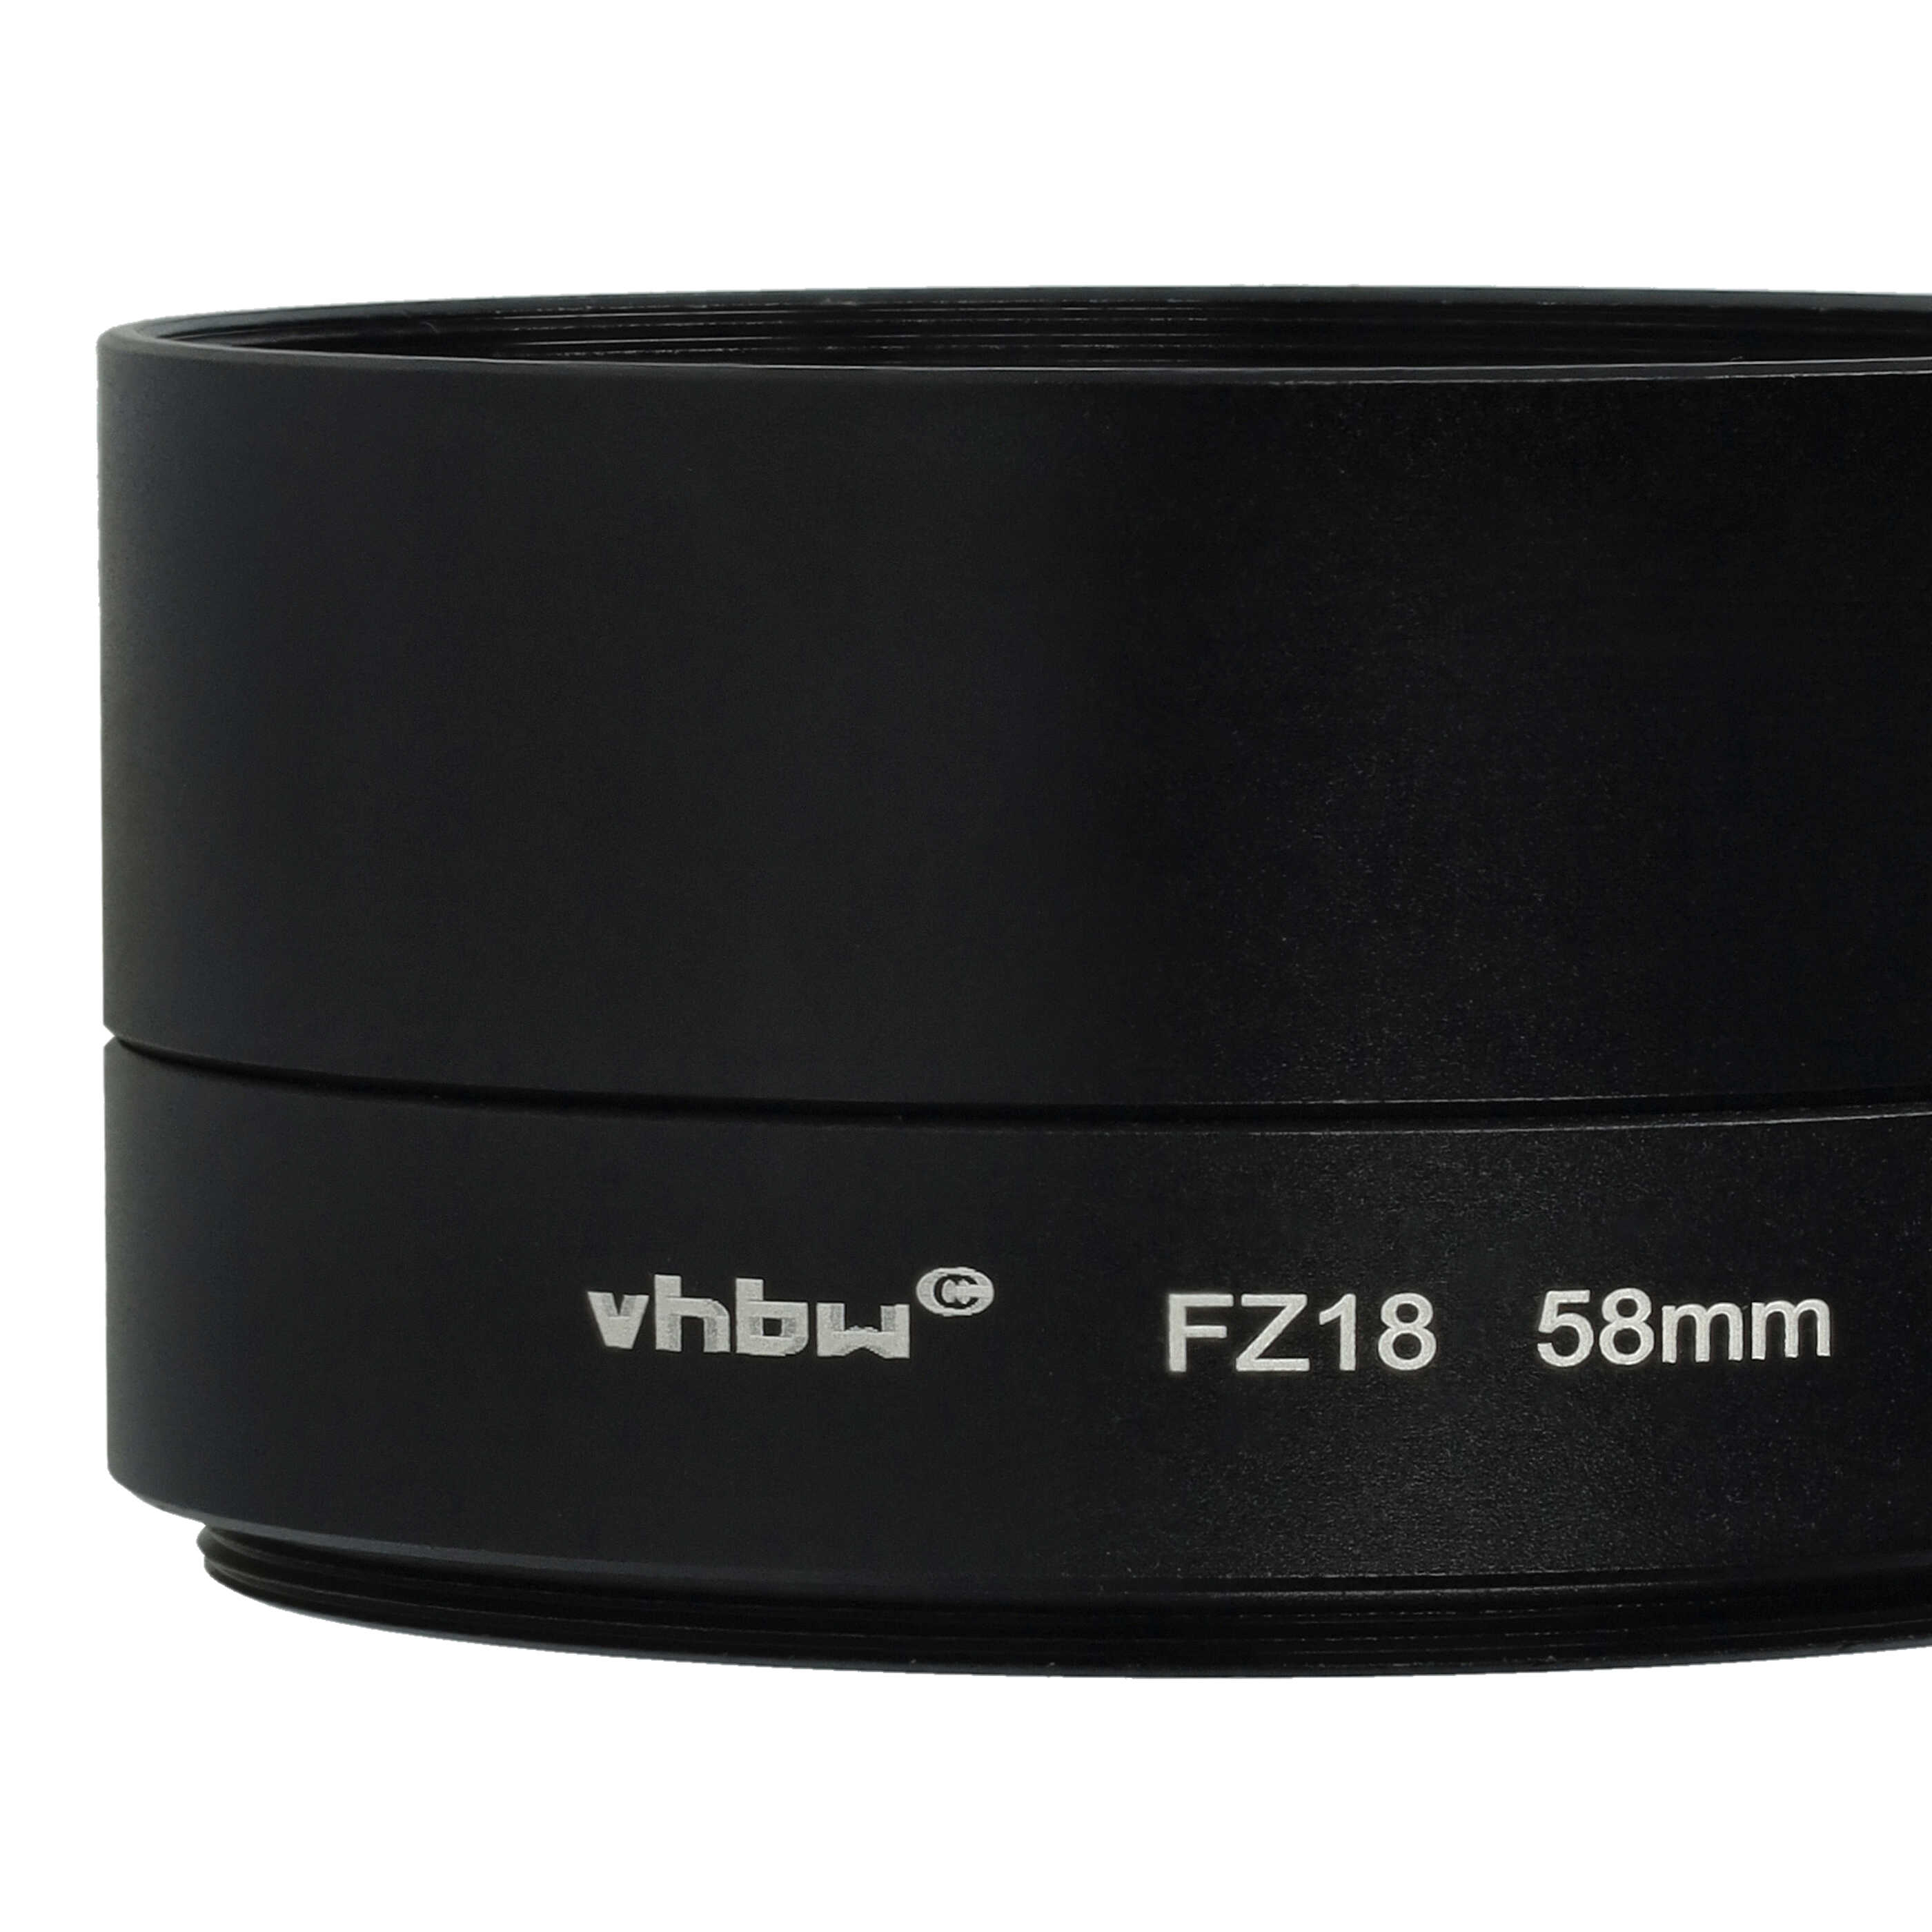 Adaptateur pour filtre 58 mm tubulaire pour objectif photo pour Panasonic Lumix DMC-FZ18